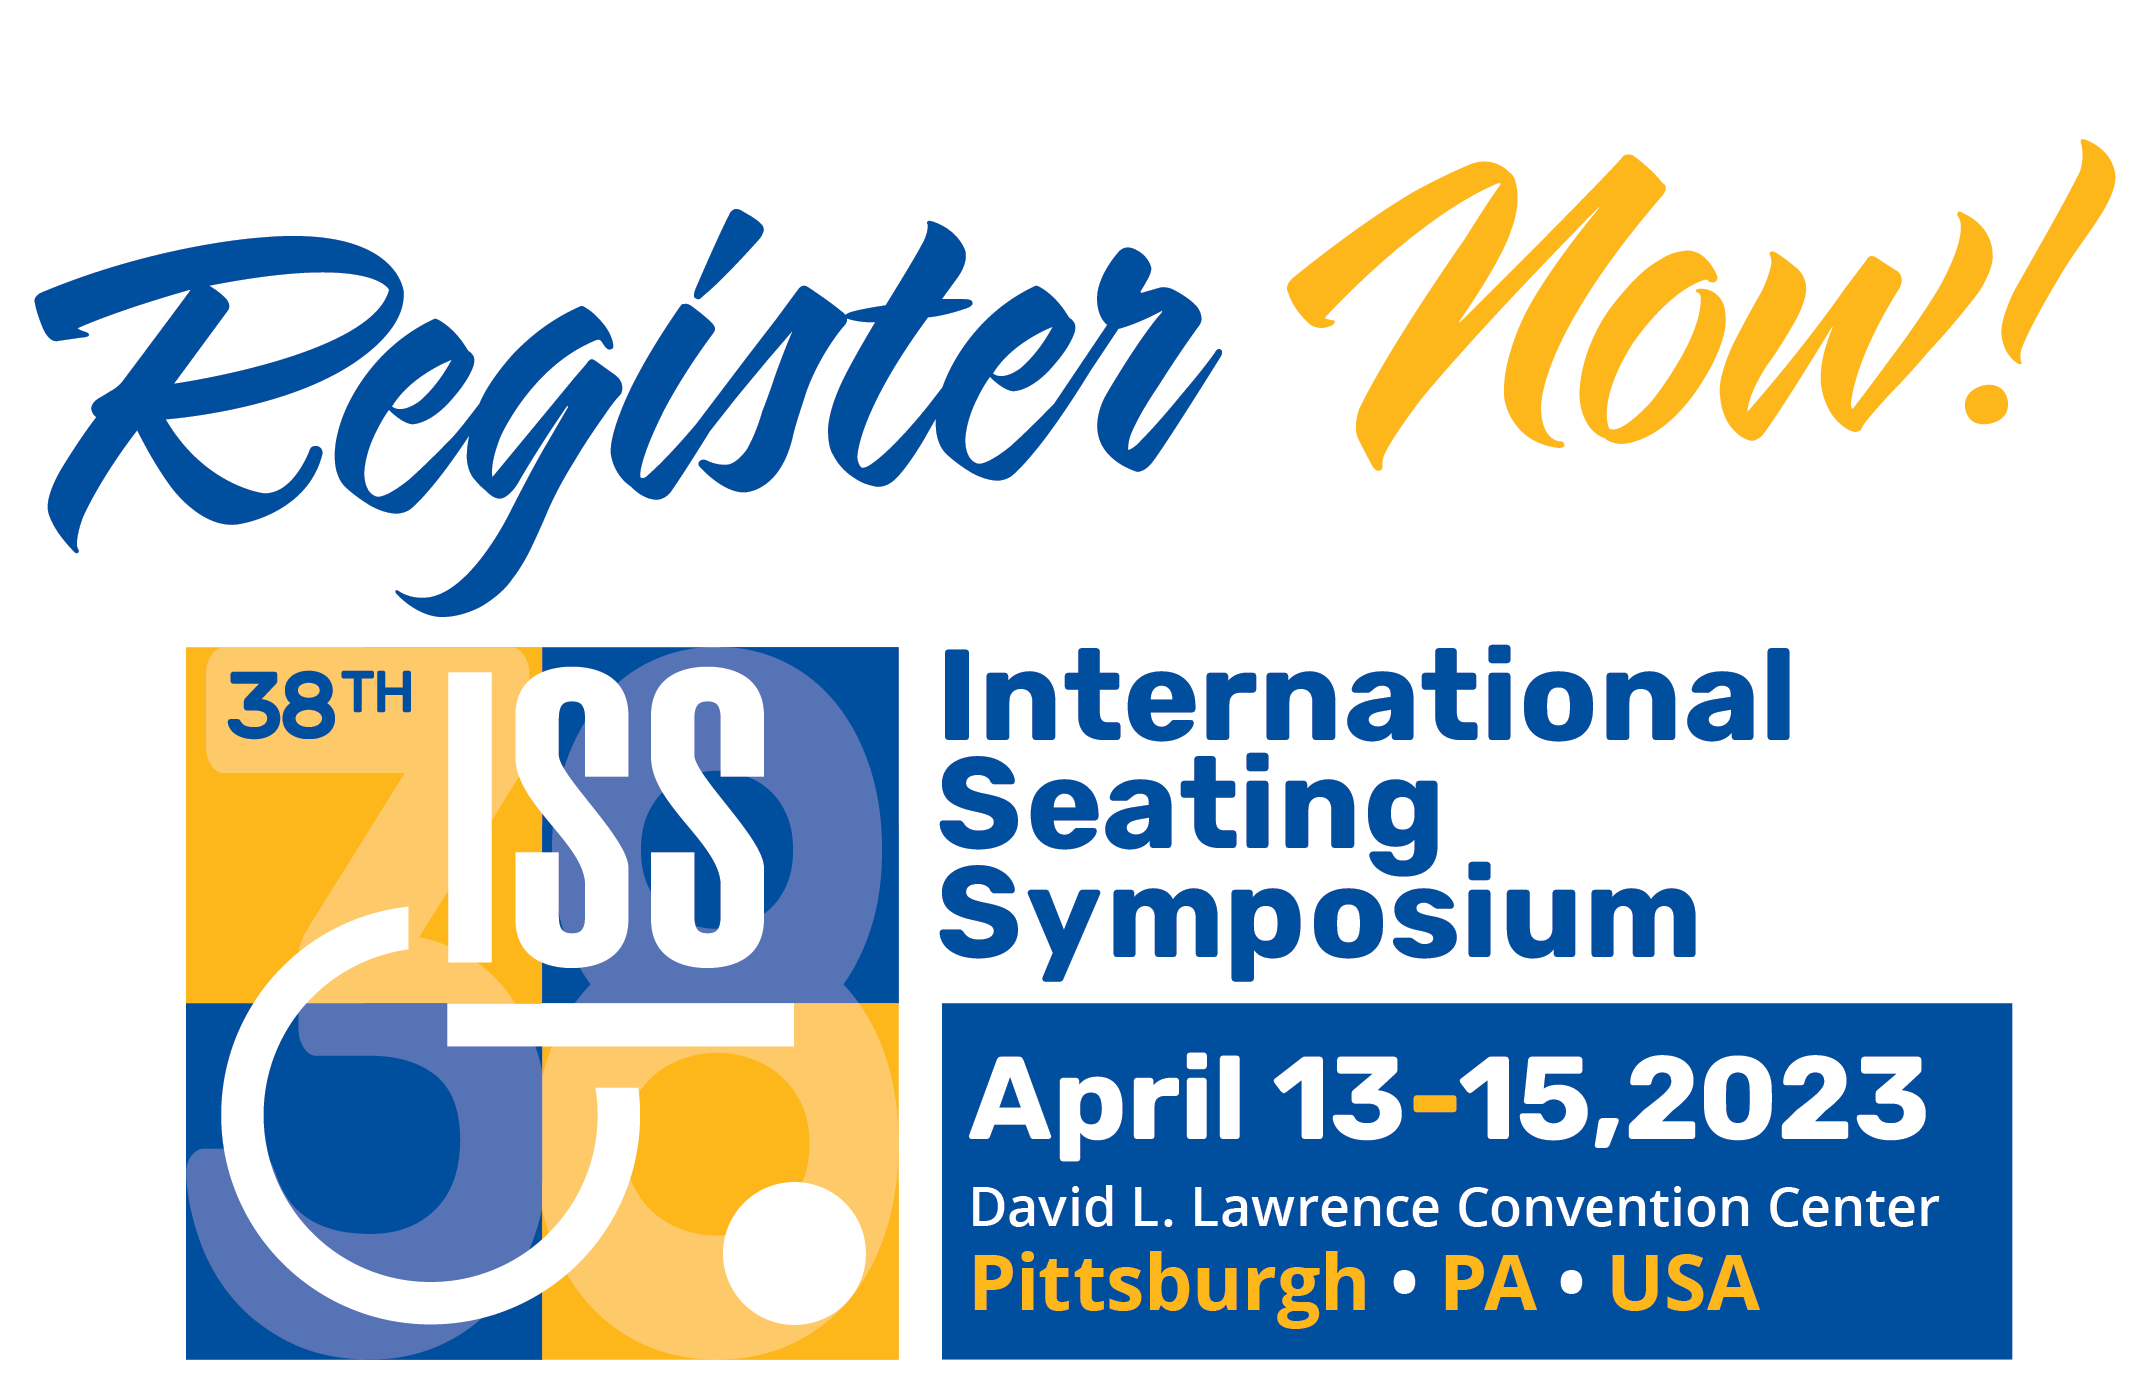 International Seating Symposium banner